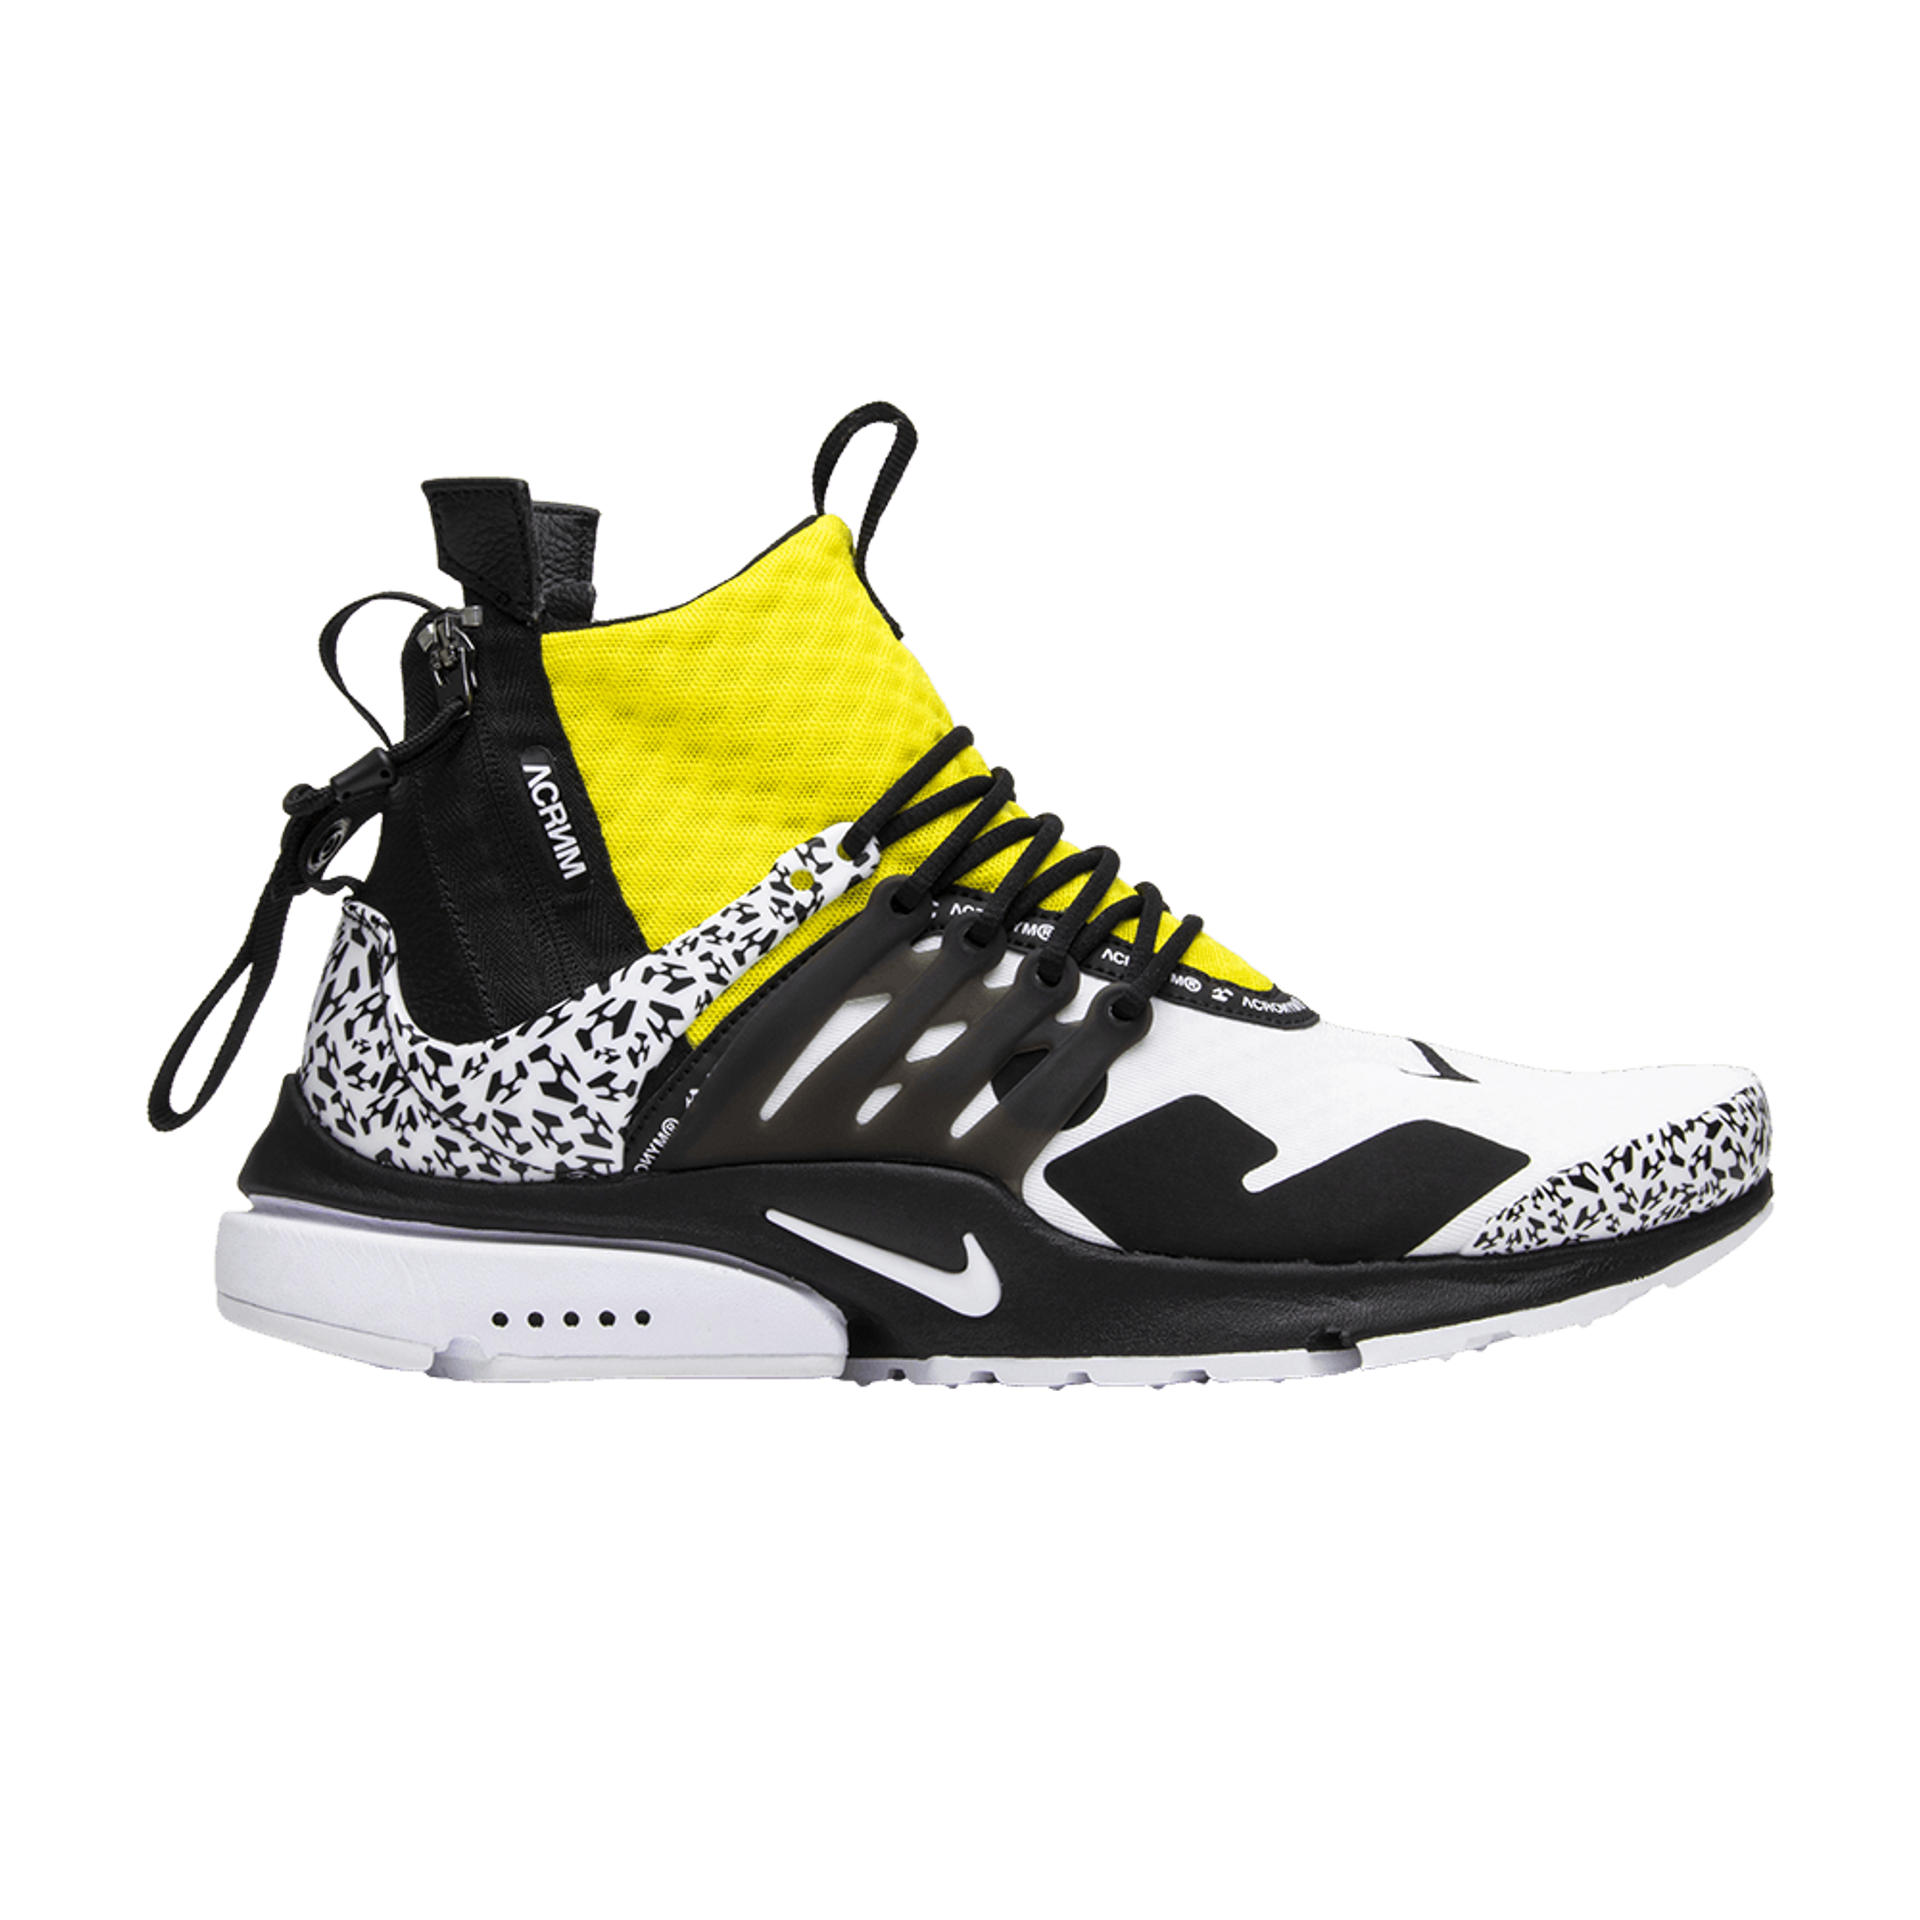 Nike Acronym x Air Presto Mid 'Dynamic Yellow'